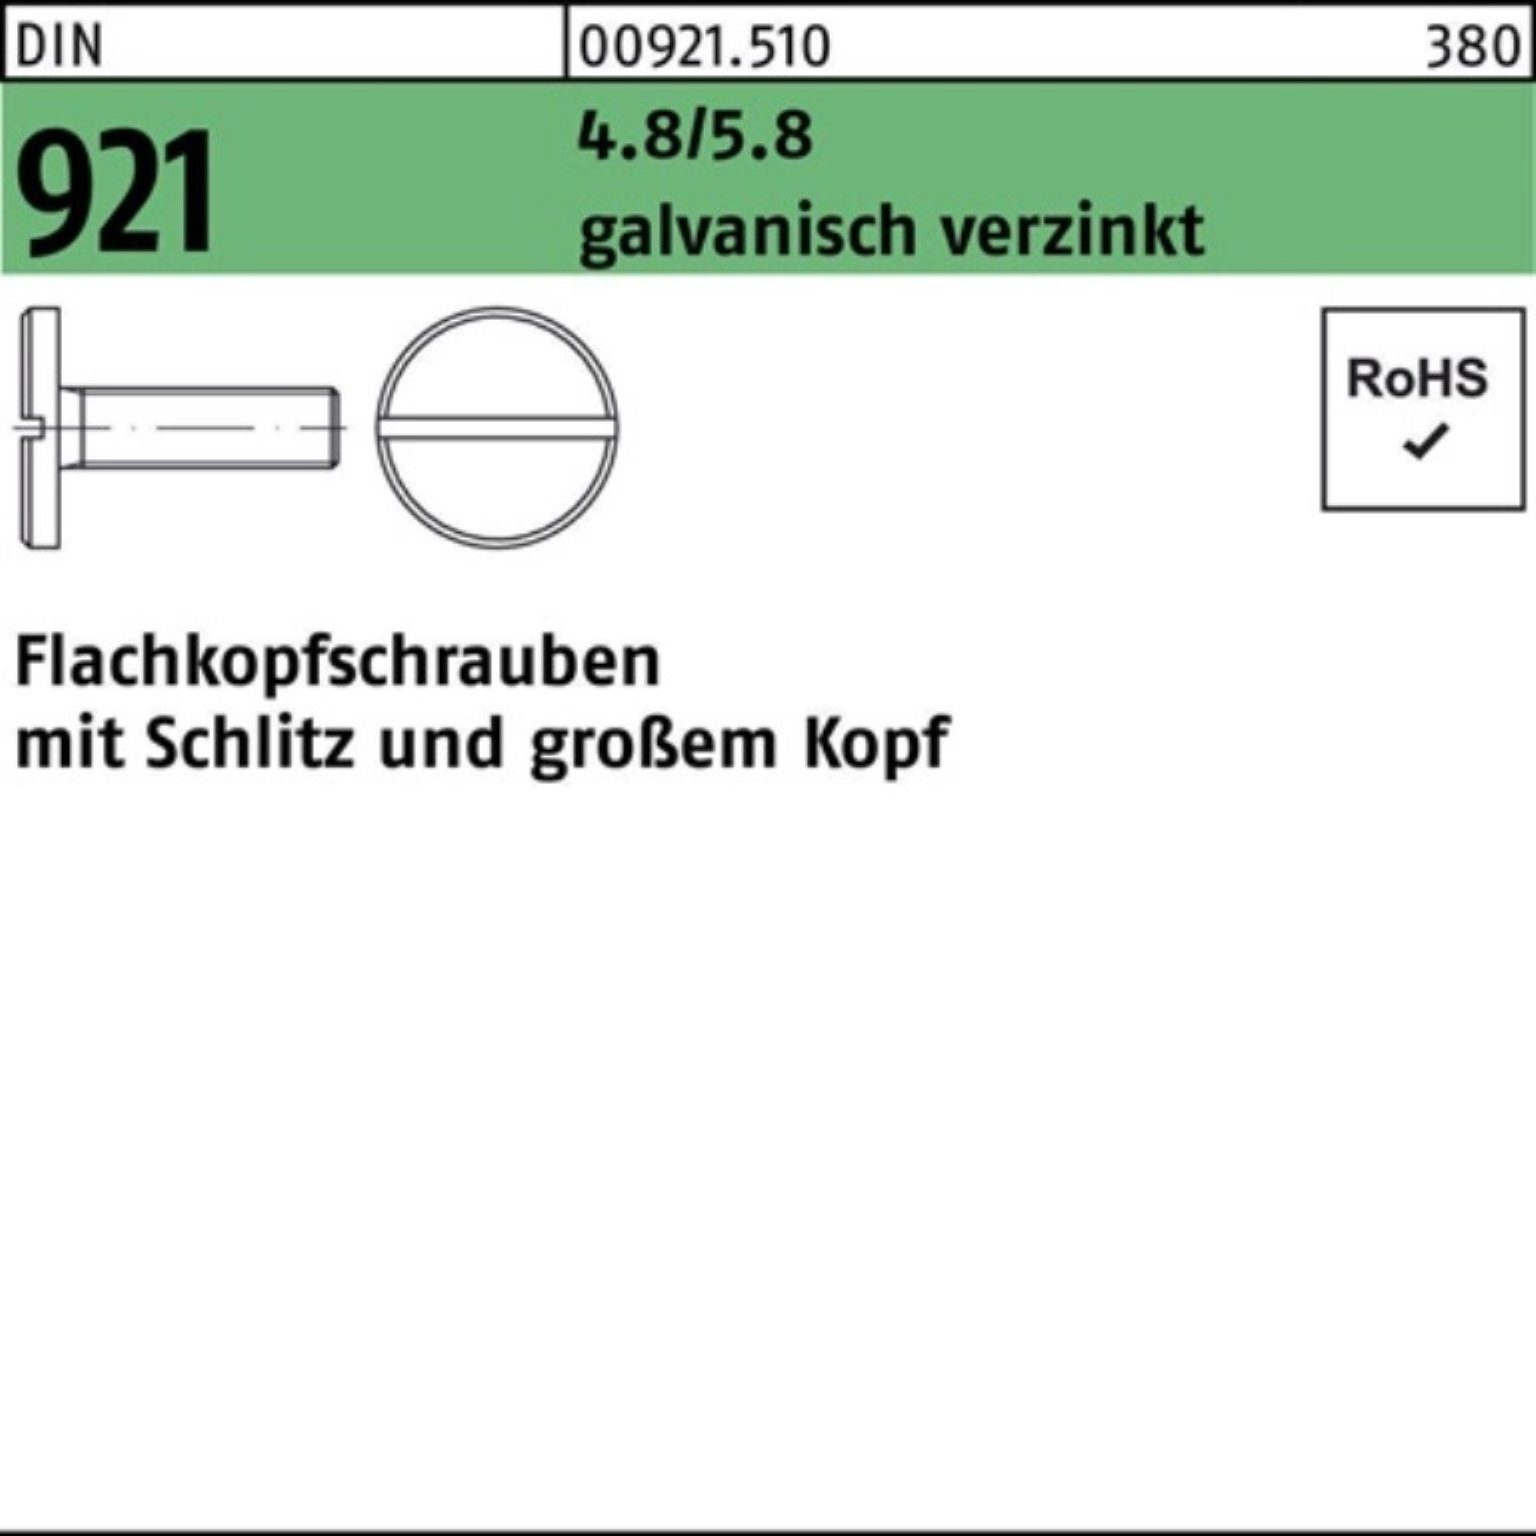 8 M5x Flachkopfschraube 921 galv.verz. Schraube DIN Schlitz Pack Reyher 4.8/5.8 100er